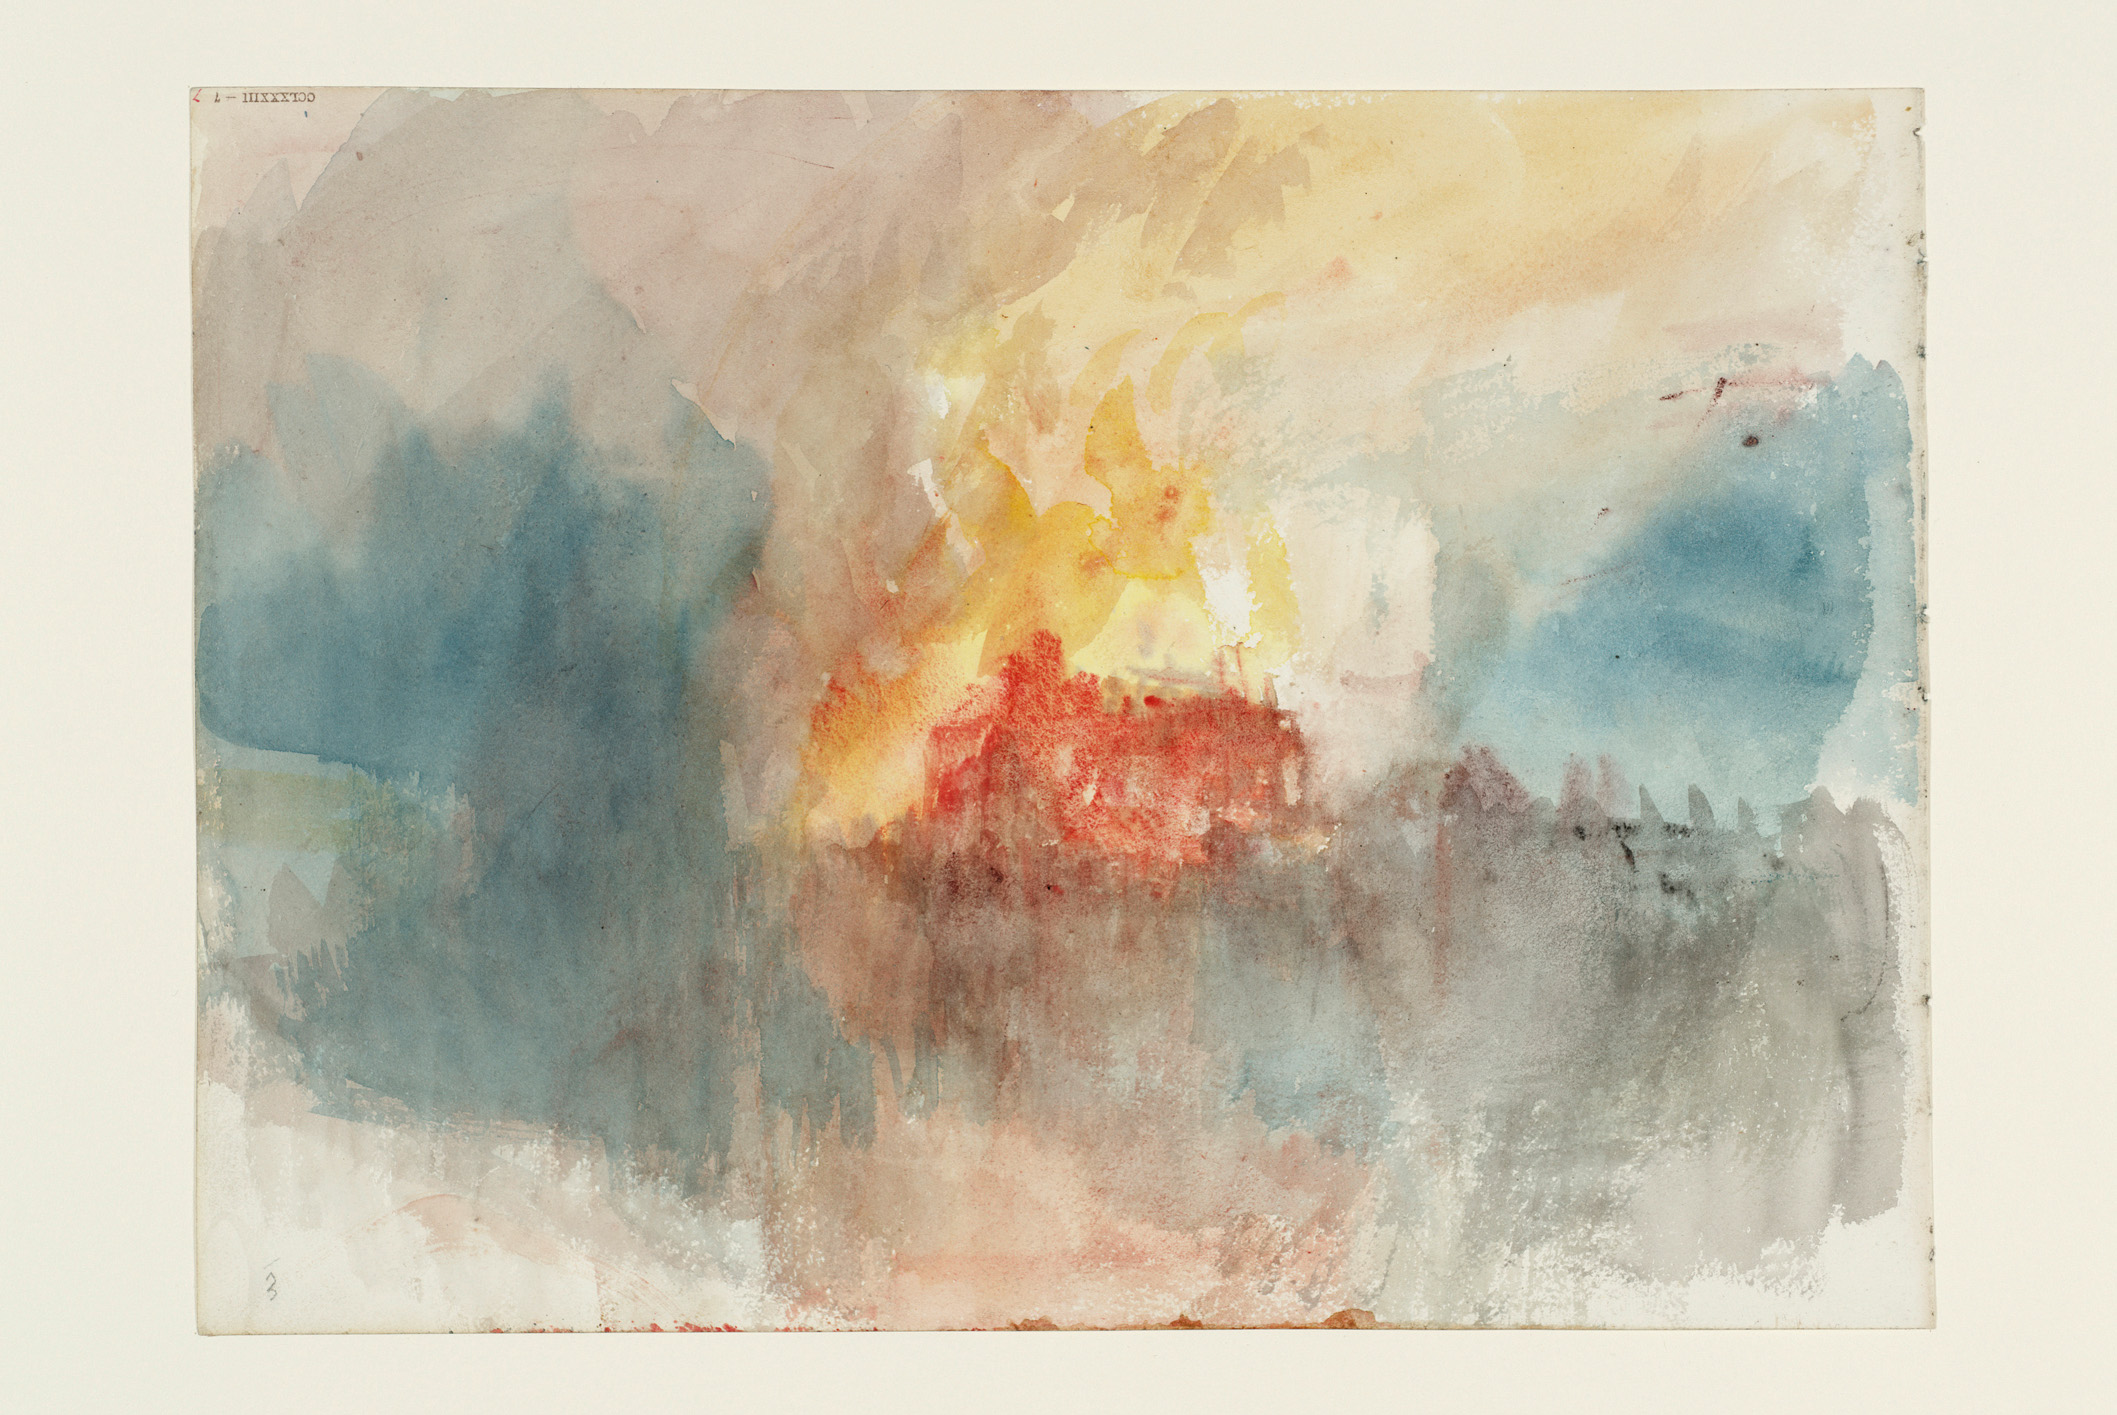 런던타워 대창고 화재(Fire at the Grand Storehouse of the Tower of London) by Joseph Mallord William Turner - 1841 - 23.5 × 32.5 cm 